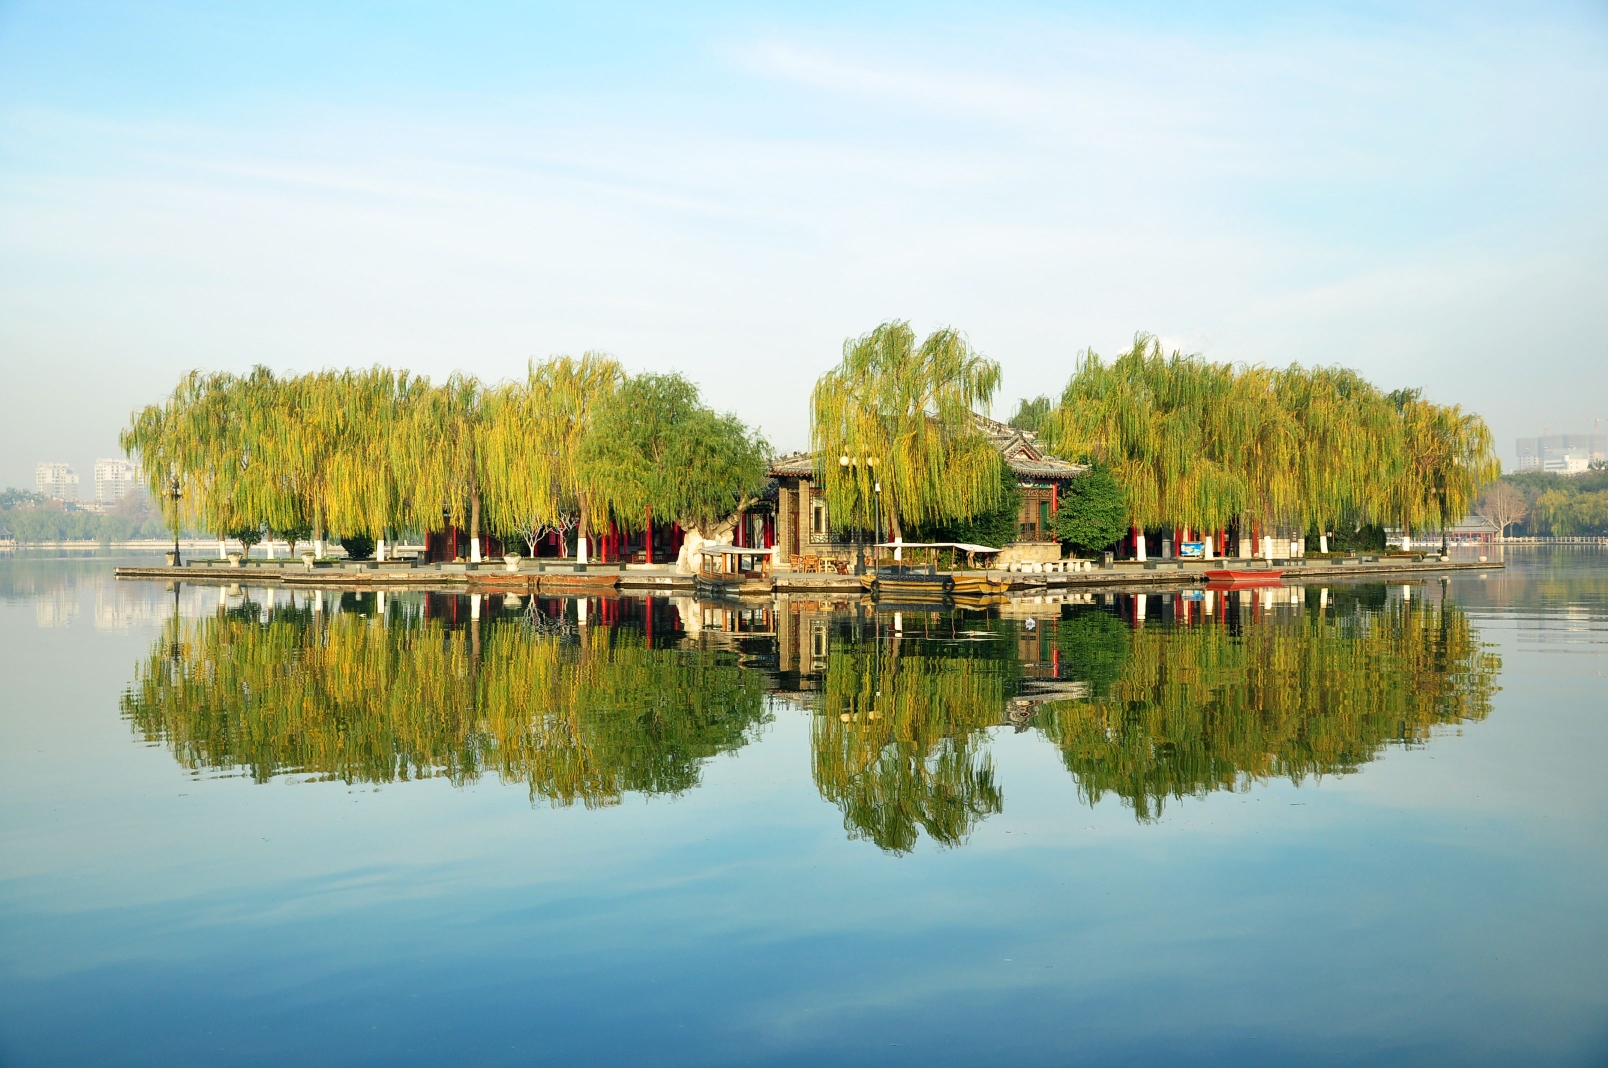 济南,大明湖畔来回味图片15,济南旅游景点,风景名胜 